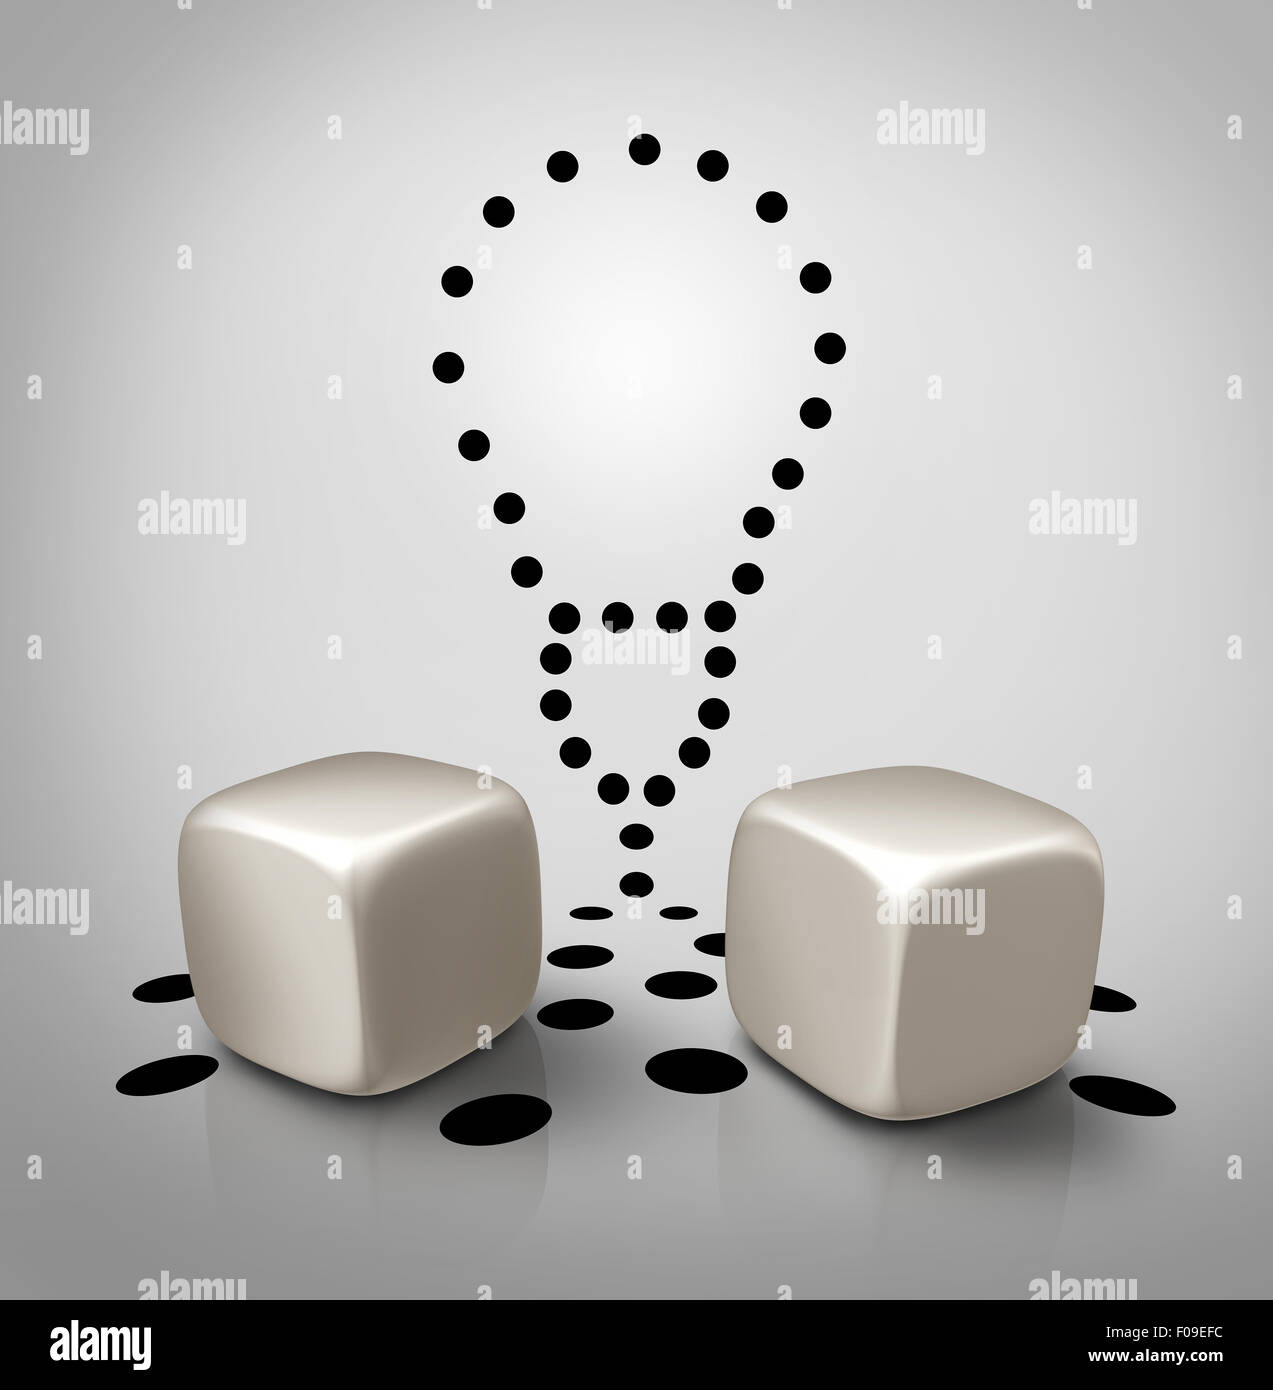 Venture idée et invention dés l'icône concept avec taches dans une ampoule forme comme un symbole d'affaires créatives pour augmenter la chance de succès d'idées ou d'argent sur une éventuelle proposition de la spec. Banque D'Images